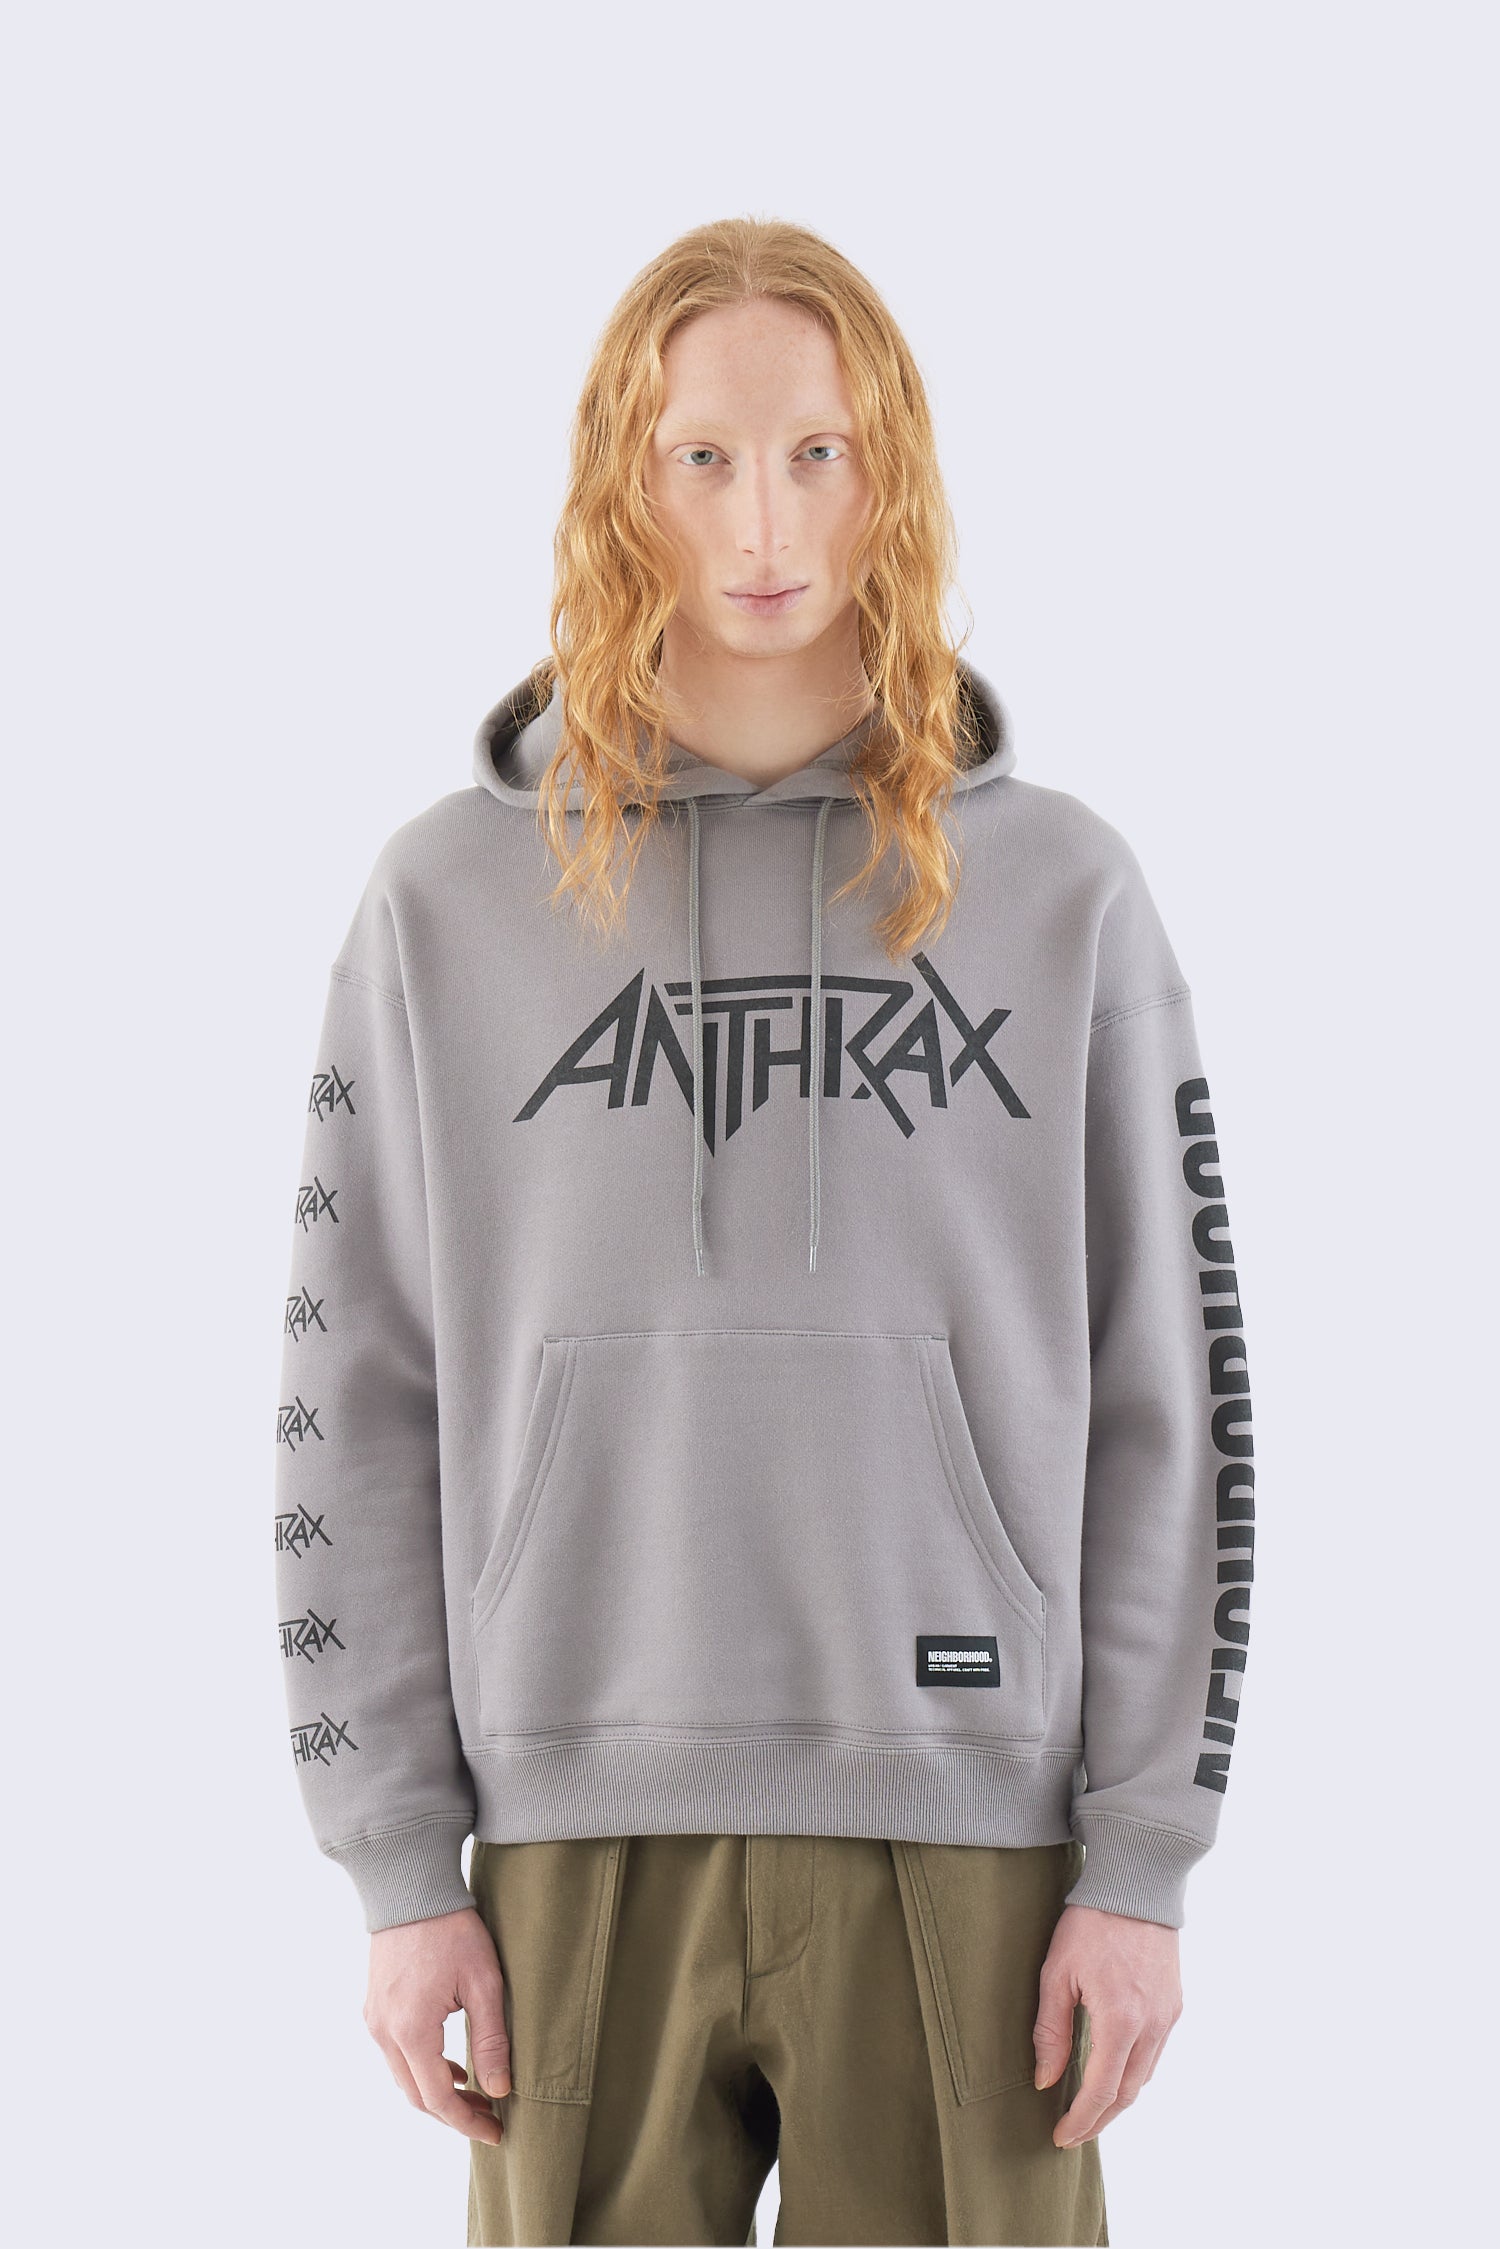 x Anthrax Sweatparka LS-2